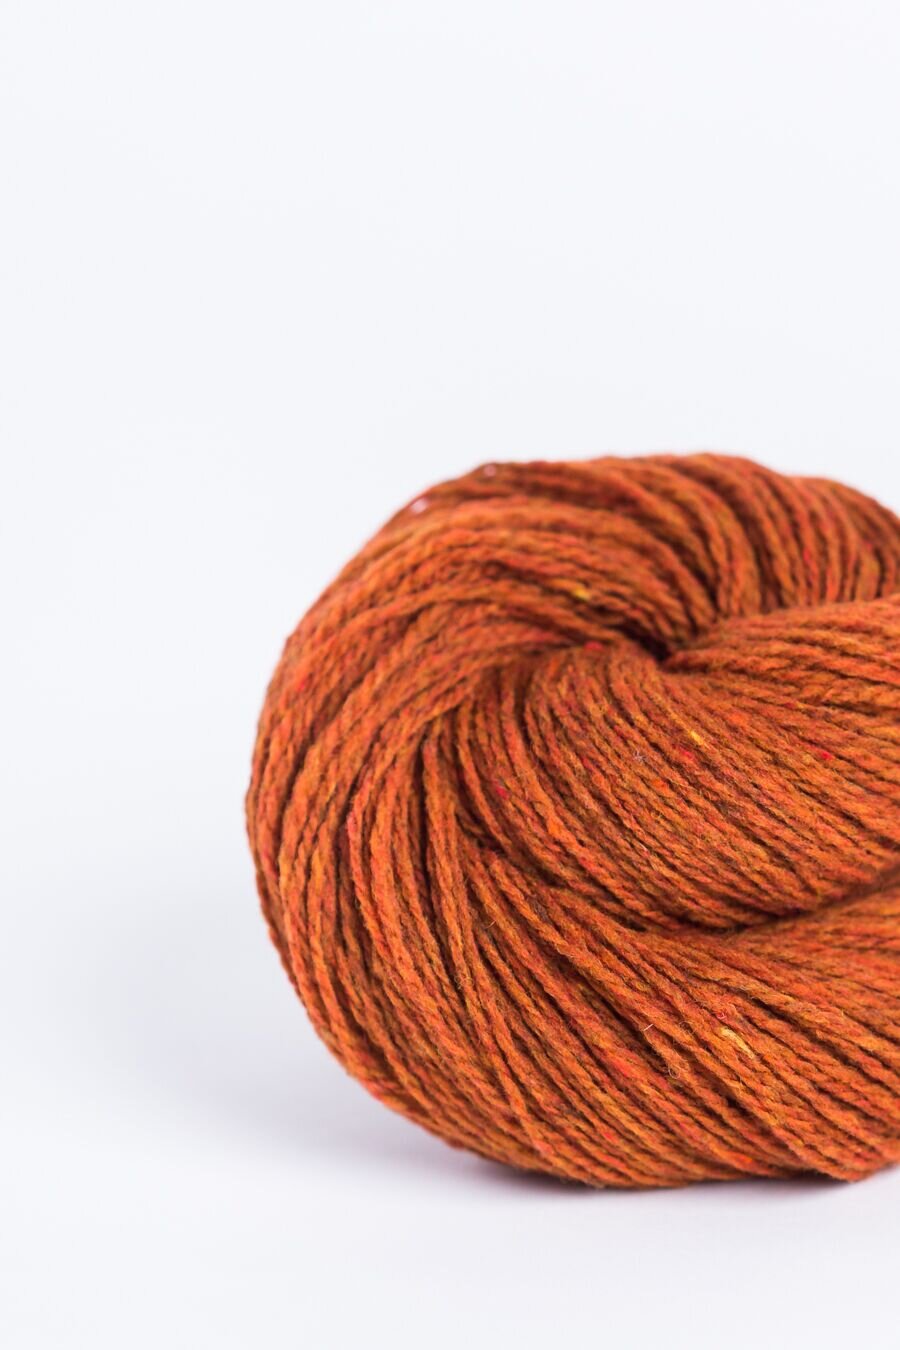 Loft - Brooklyn Tweed — Knitting Society